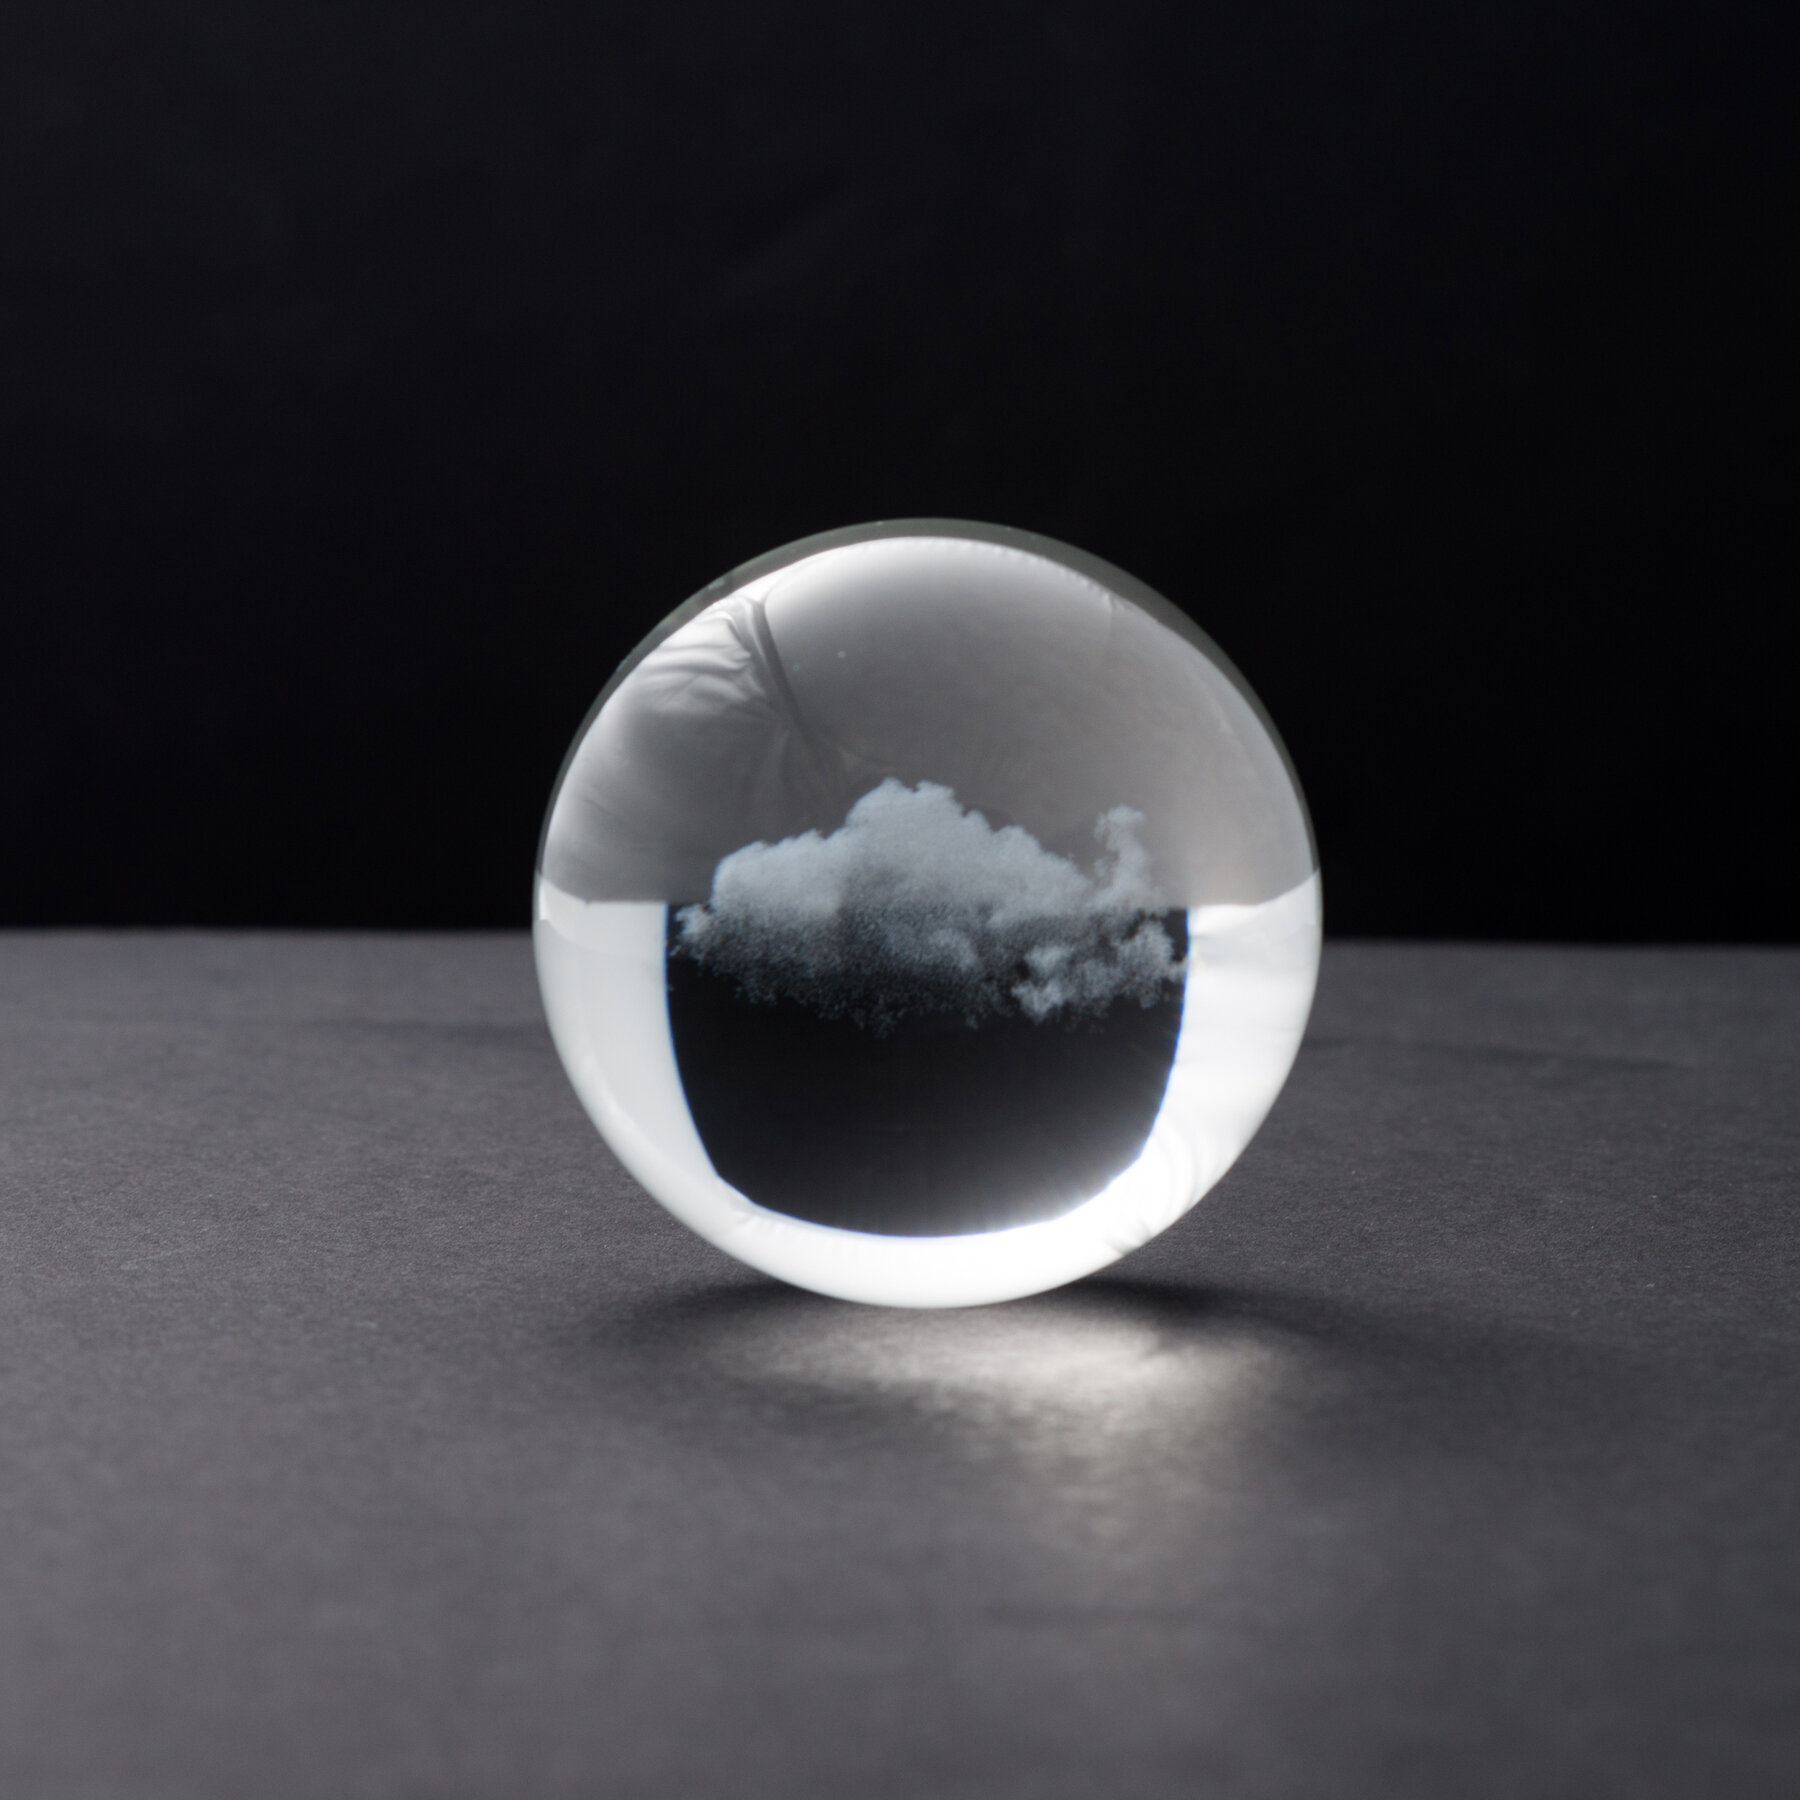 cloud_sphere_mini_1.75x1.75x1.75_inches_glass_2017_miya_ando_2.jpg